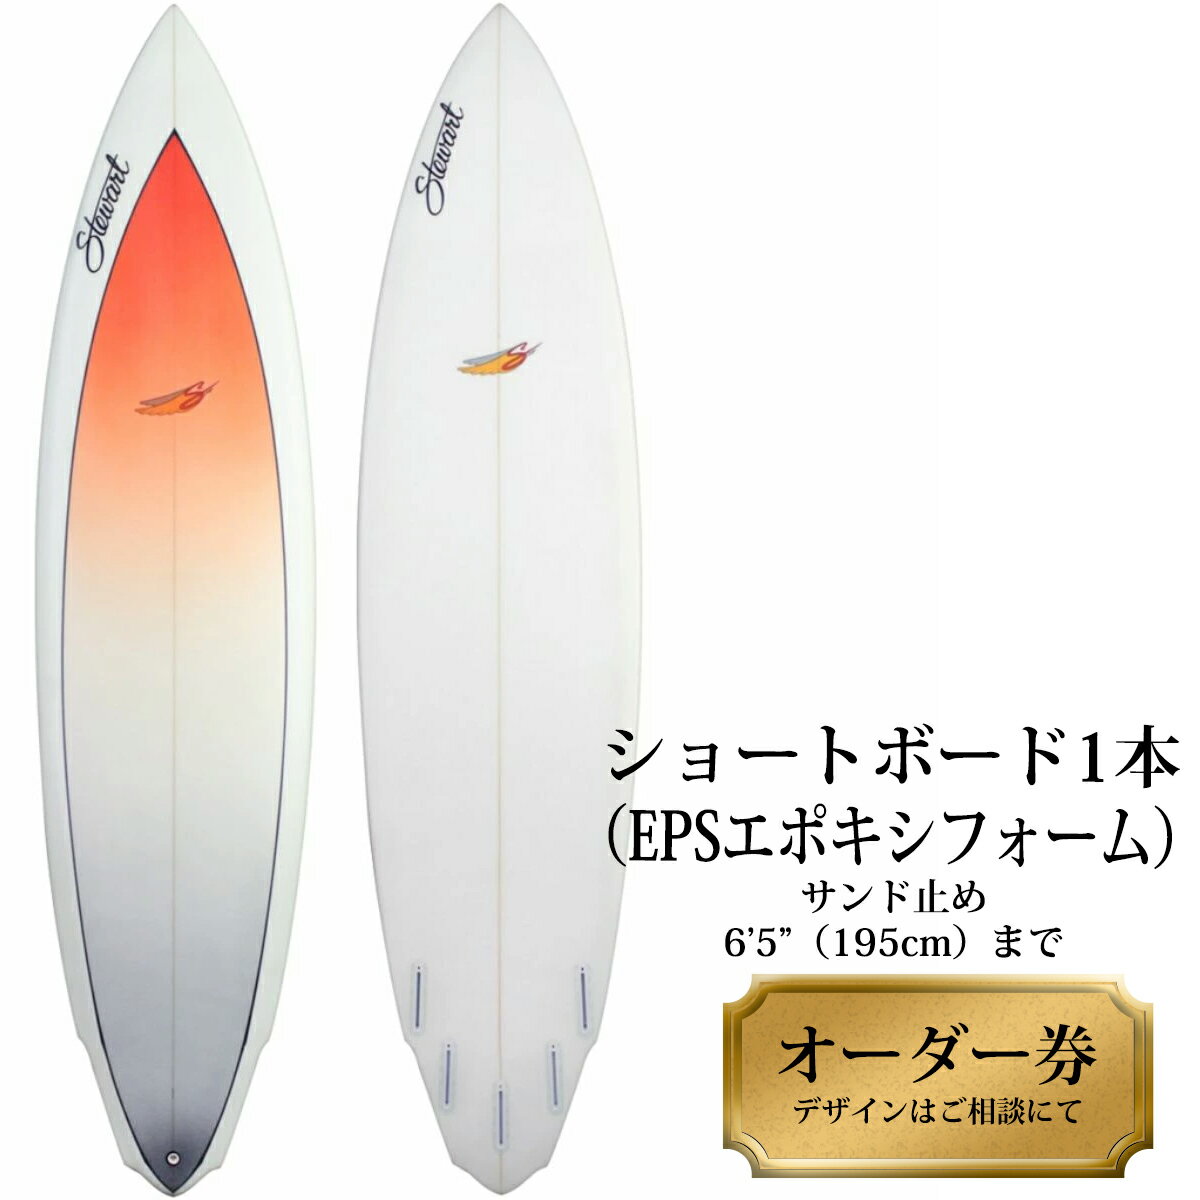 サーフボード ショートボード 1本オーダー券(EPSエポキシフォーム) サーフィン